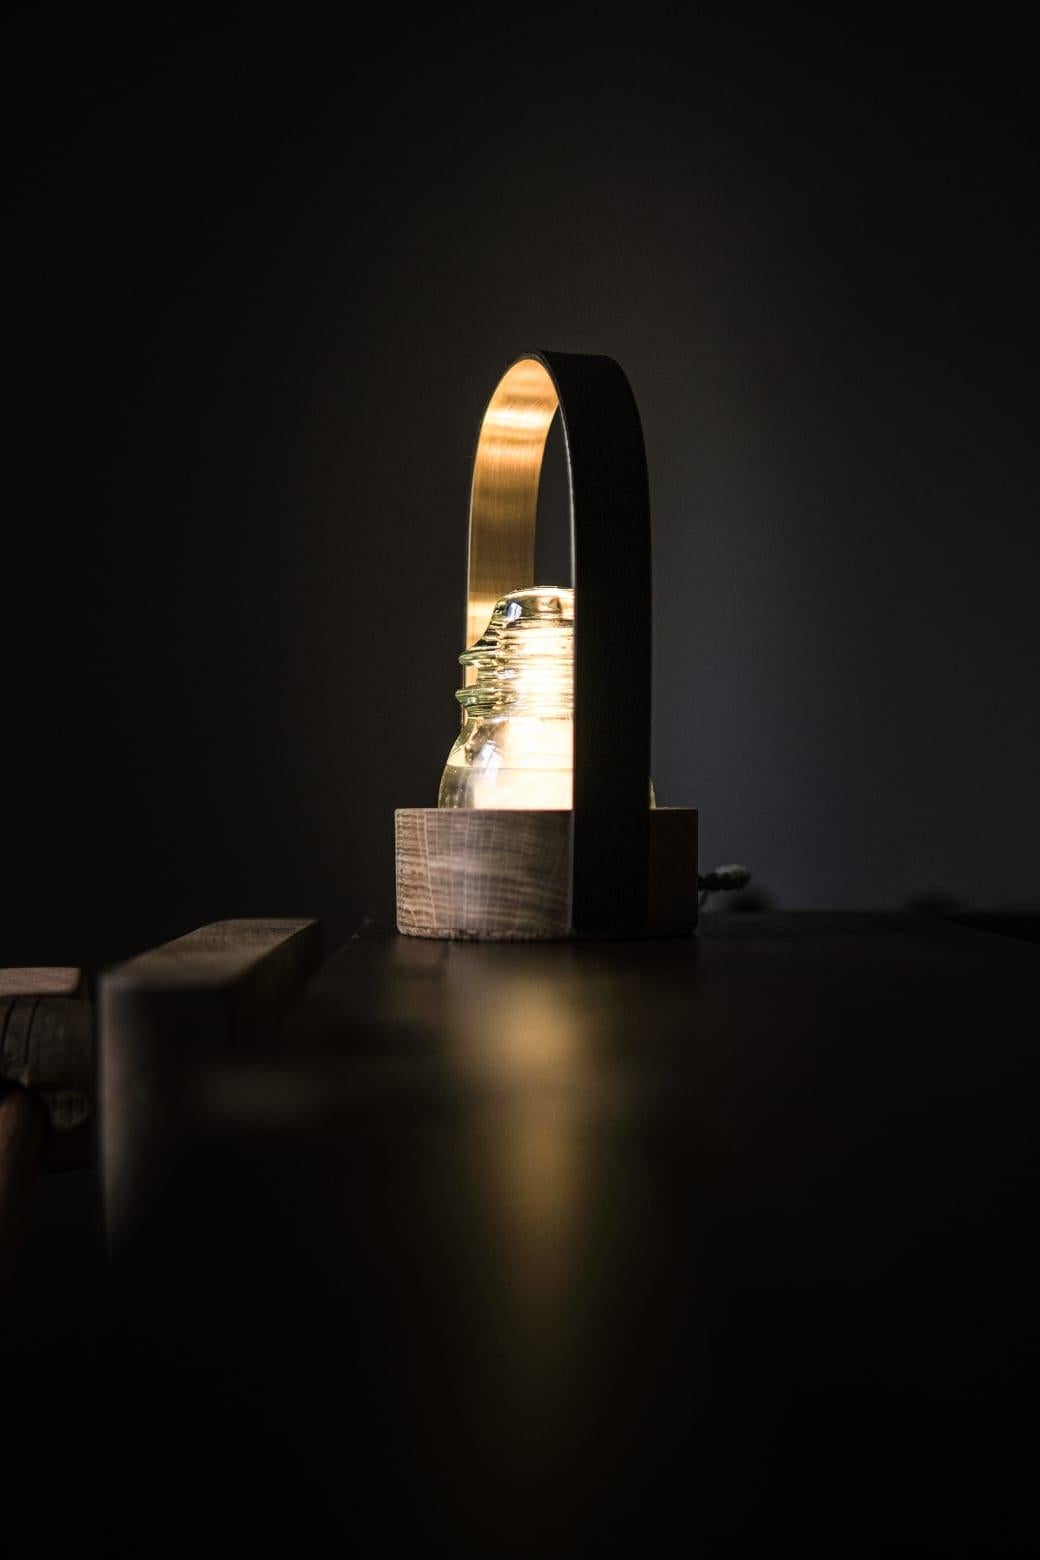 La lampe de table Vitrum est née de la réutilisation d'anciens isolateurs électriques en verre trempé utilisés dans les poteaux qui alimentaient les villes en électricité au XXe siècle.

L'idée de créer cette lampe était de réutiliser et de donner